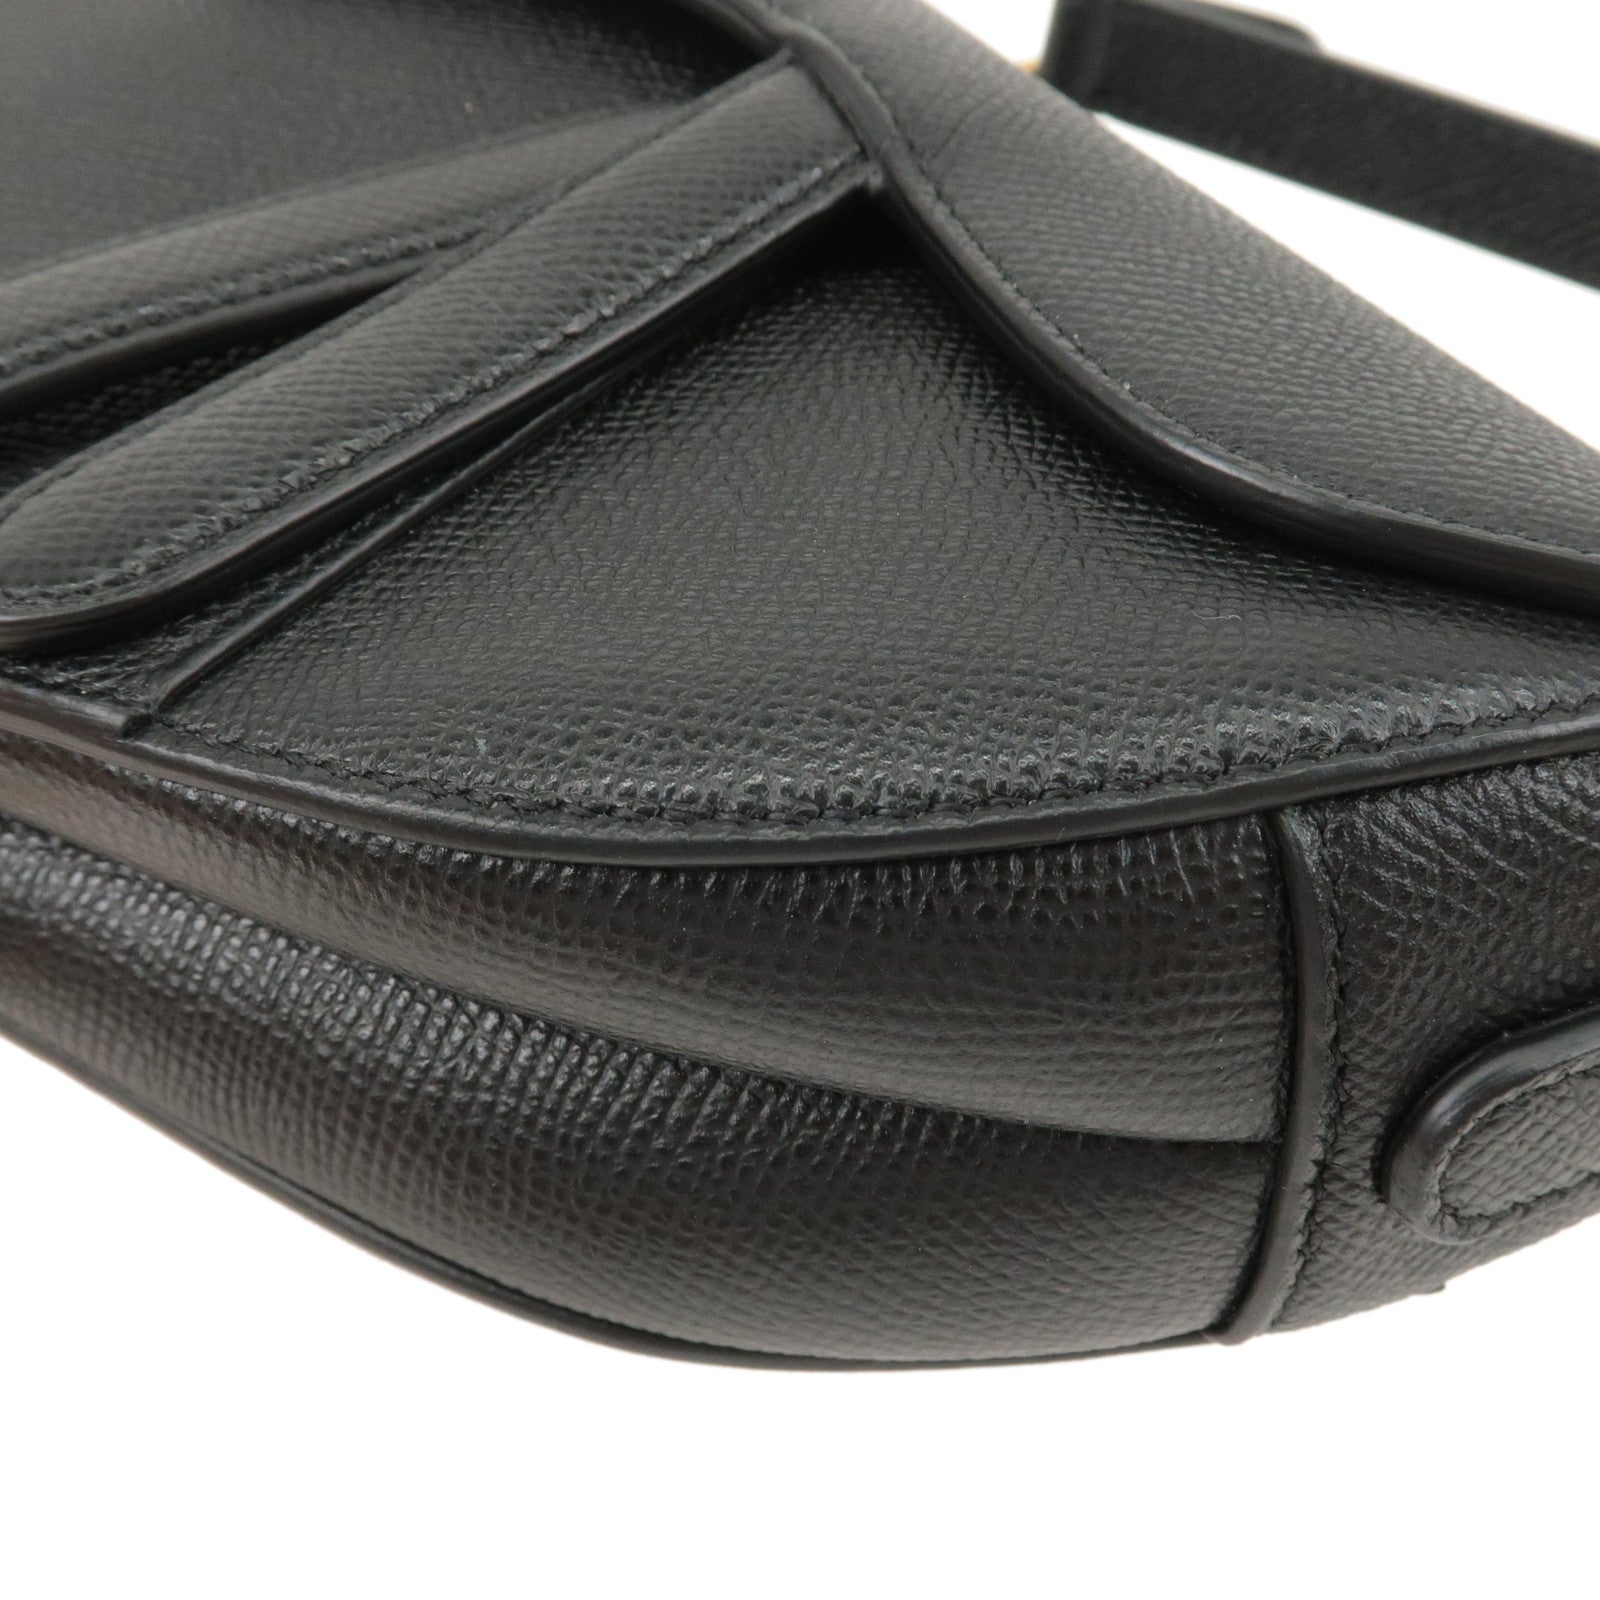 Christian-Dior-Saddle-Bag-Leather-Shoulder-Bag-Hand-Bag-Black